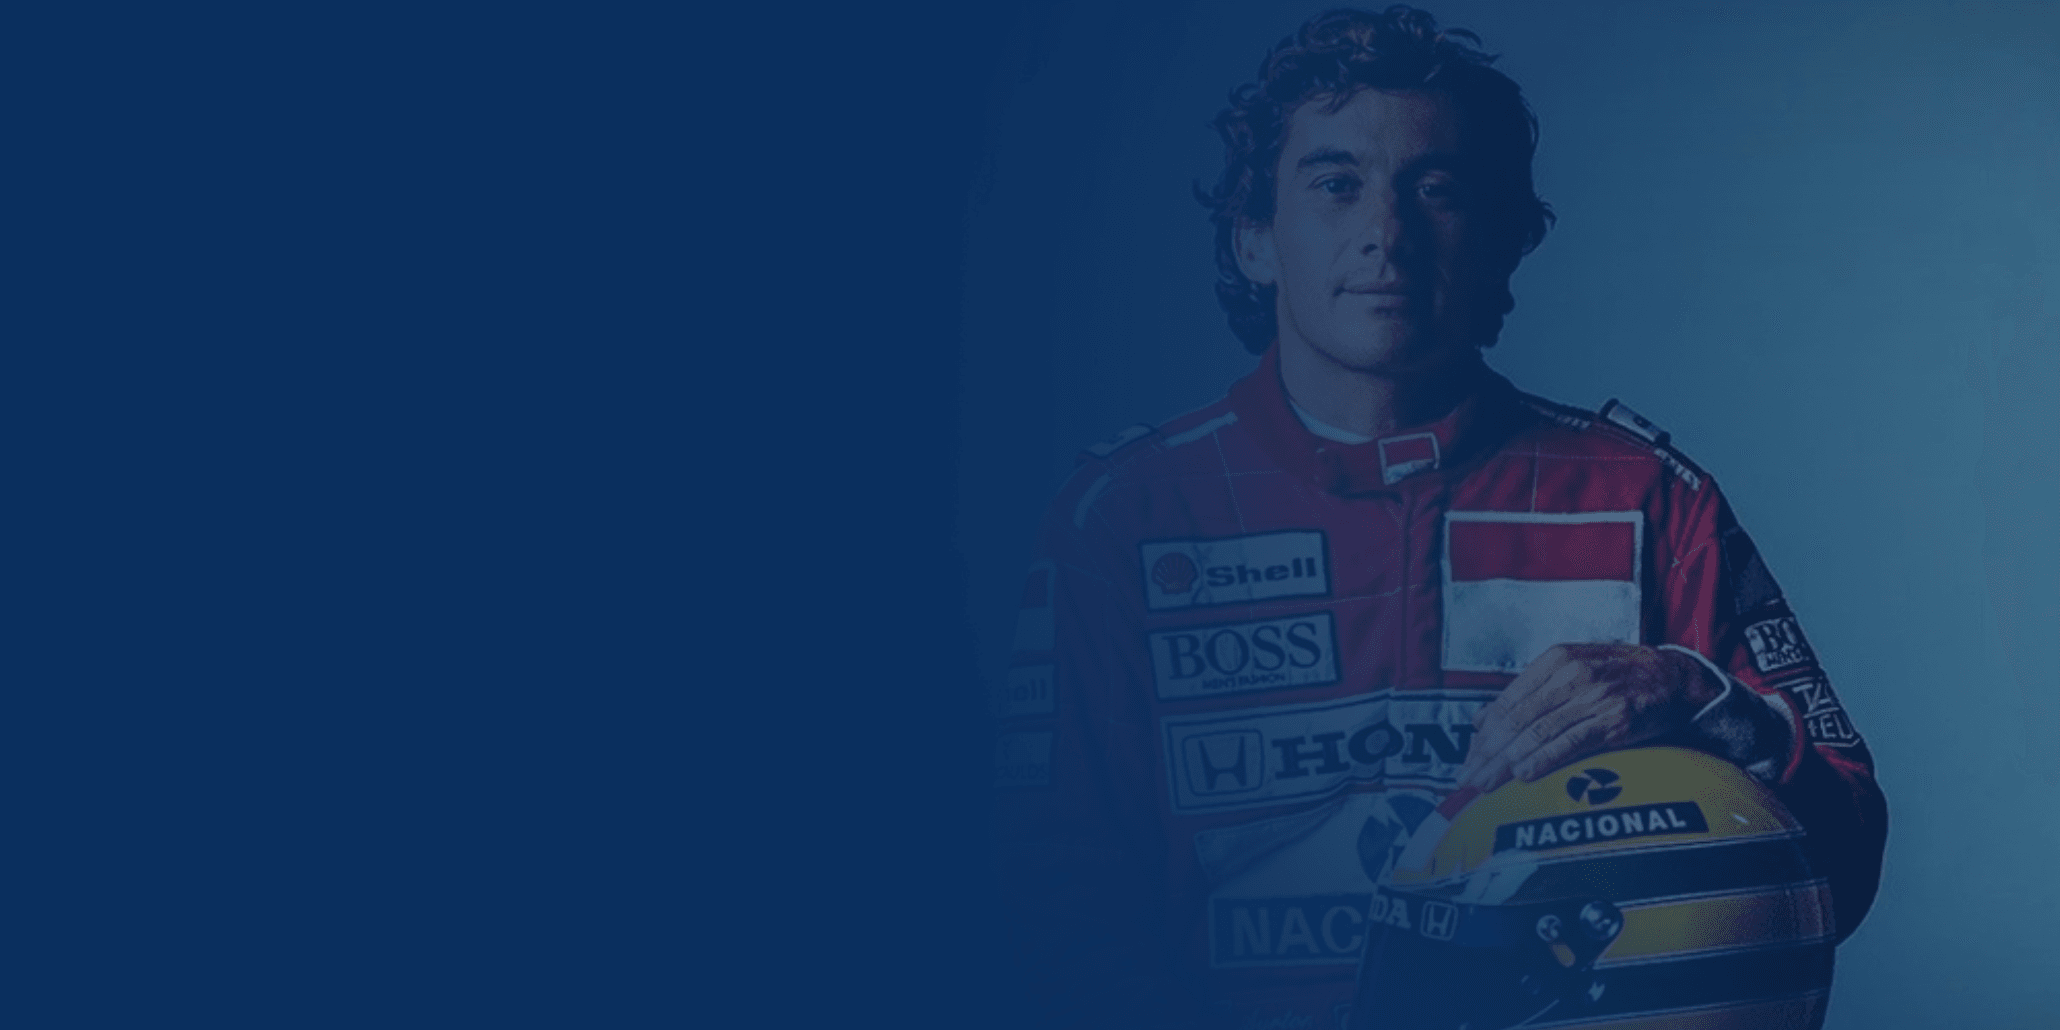 Prima de Ayrton Senna expõe conflitos na família do piloto: “Perderam o contato”